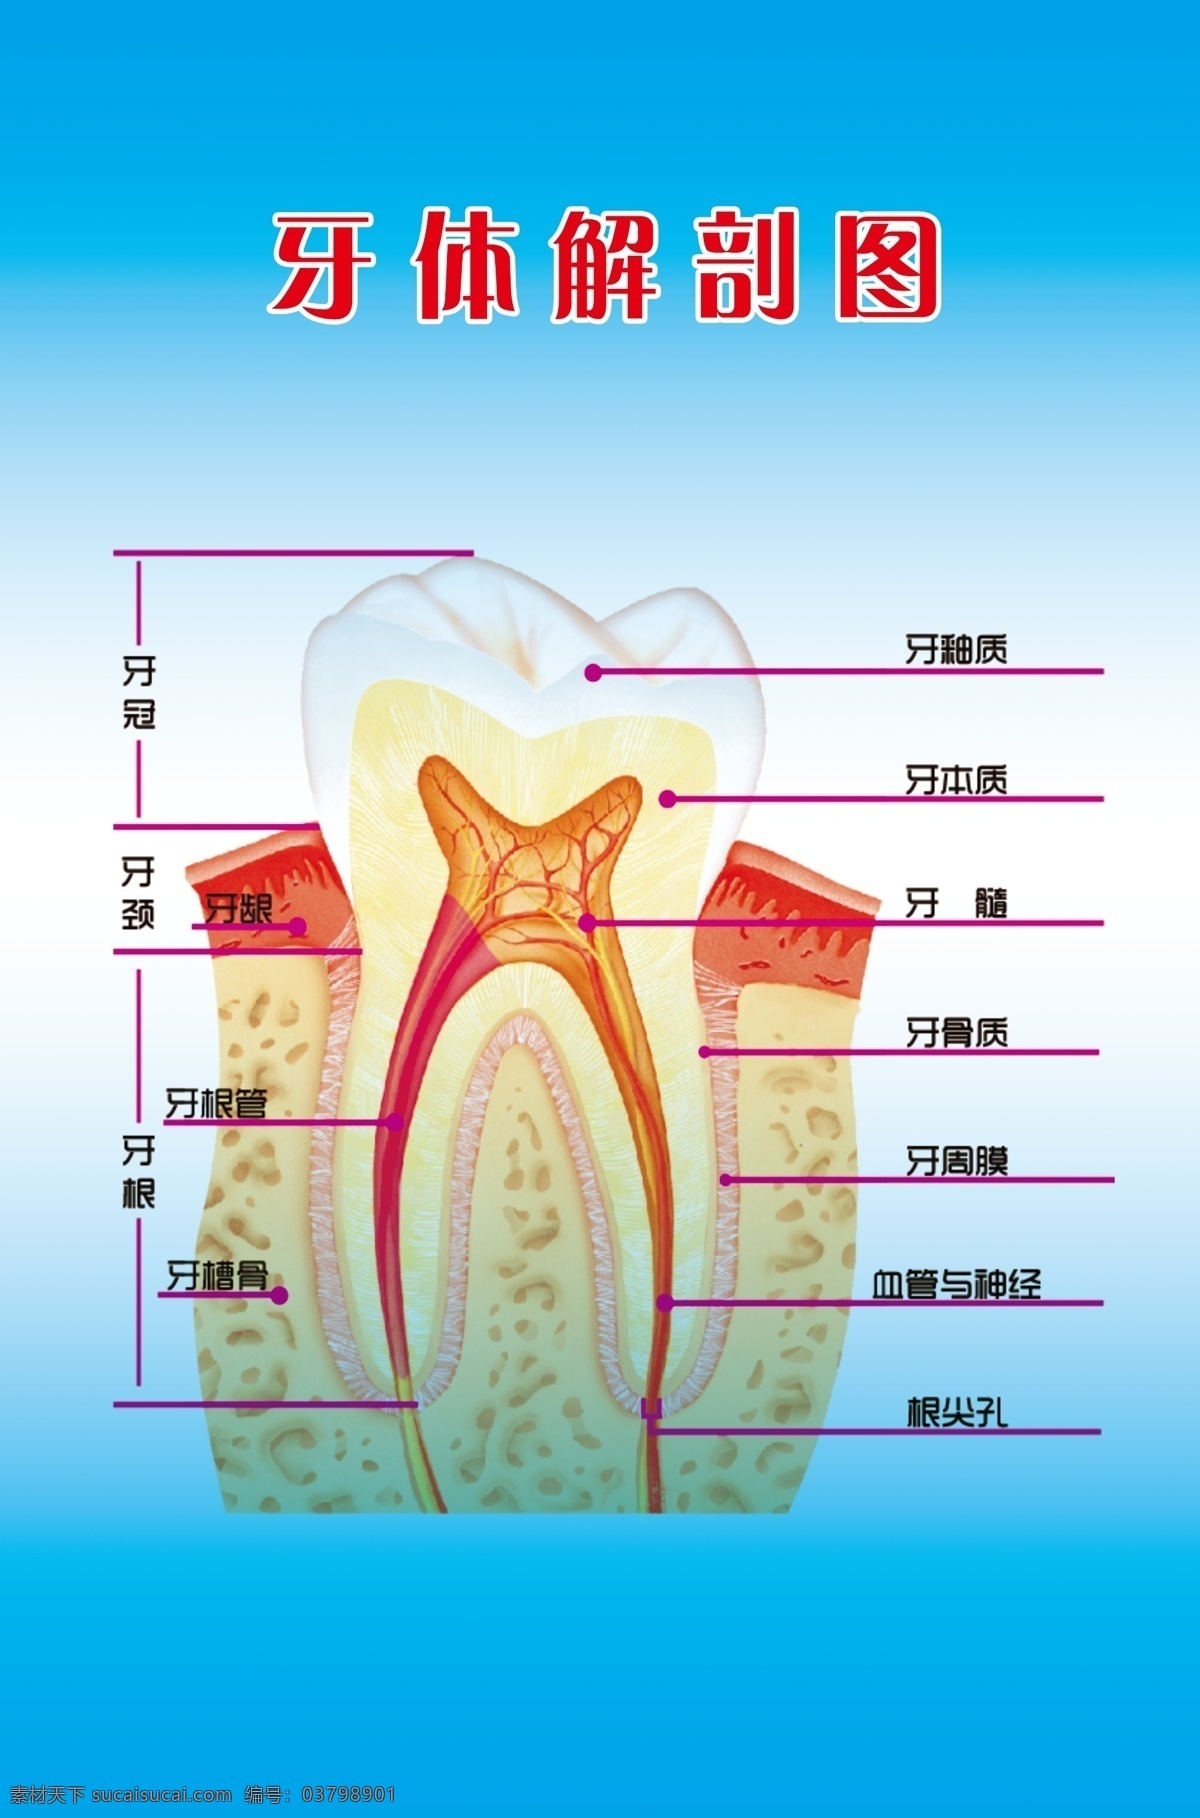 牙齿结构图 牙齿 结构图 牙釉质 牙本质 牙髓 分层